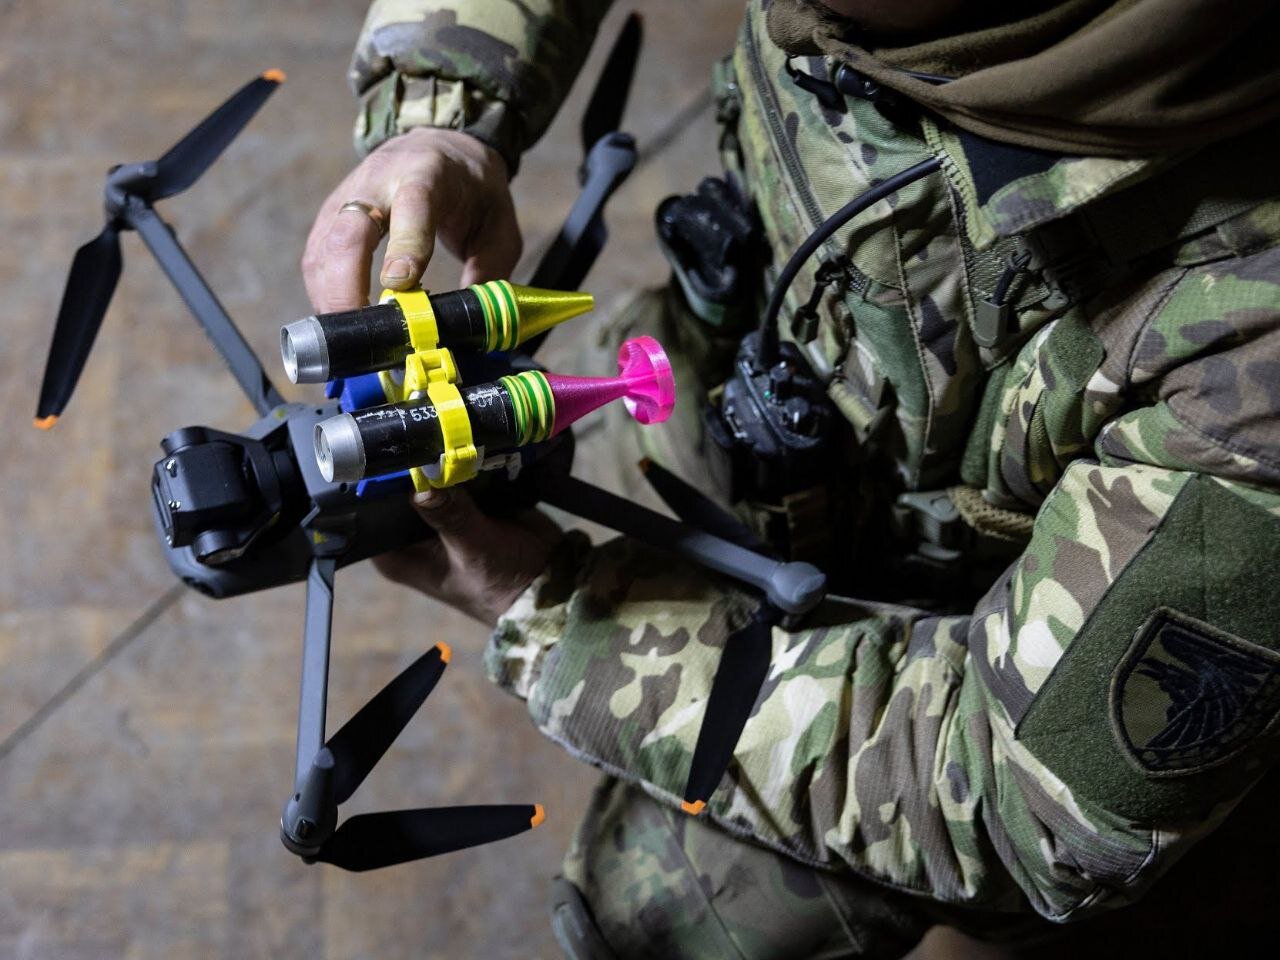 اوکراین کوادکوپترهای بمب‌افکن خود را مجهز می‌کند!/ عکس